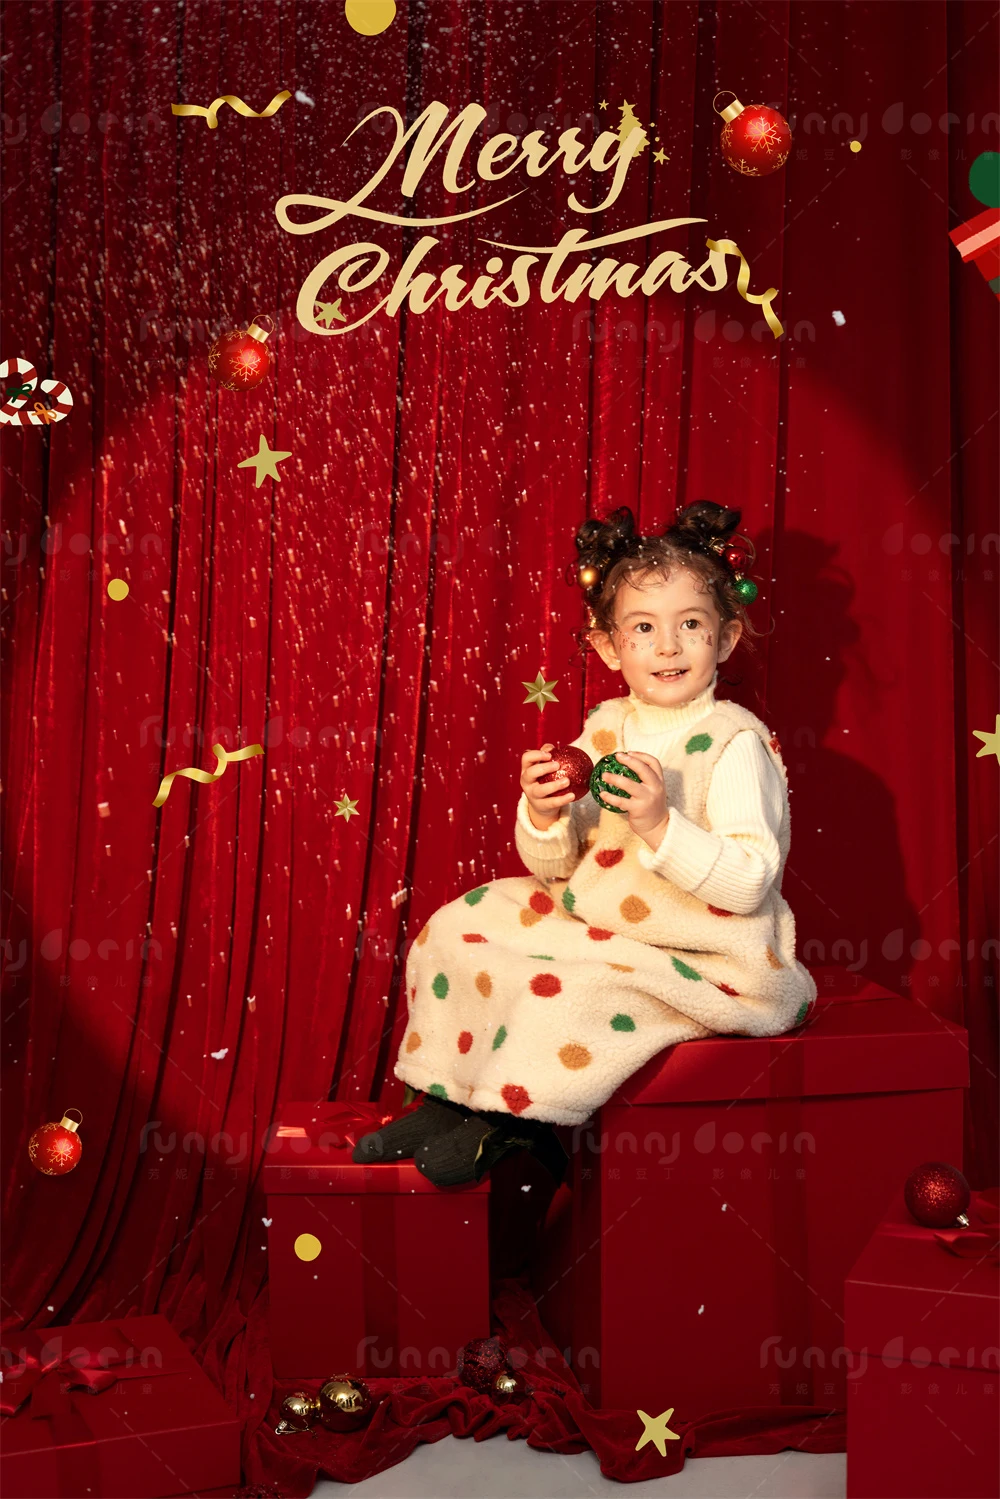 芳妮豆丁儿童摄影 圣诞颂